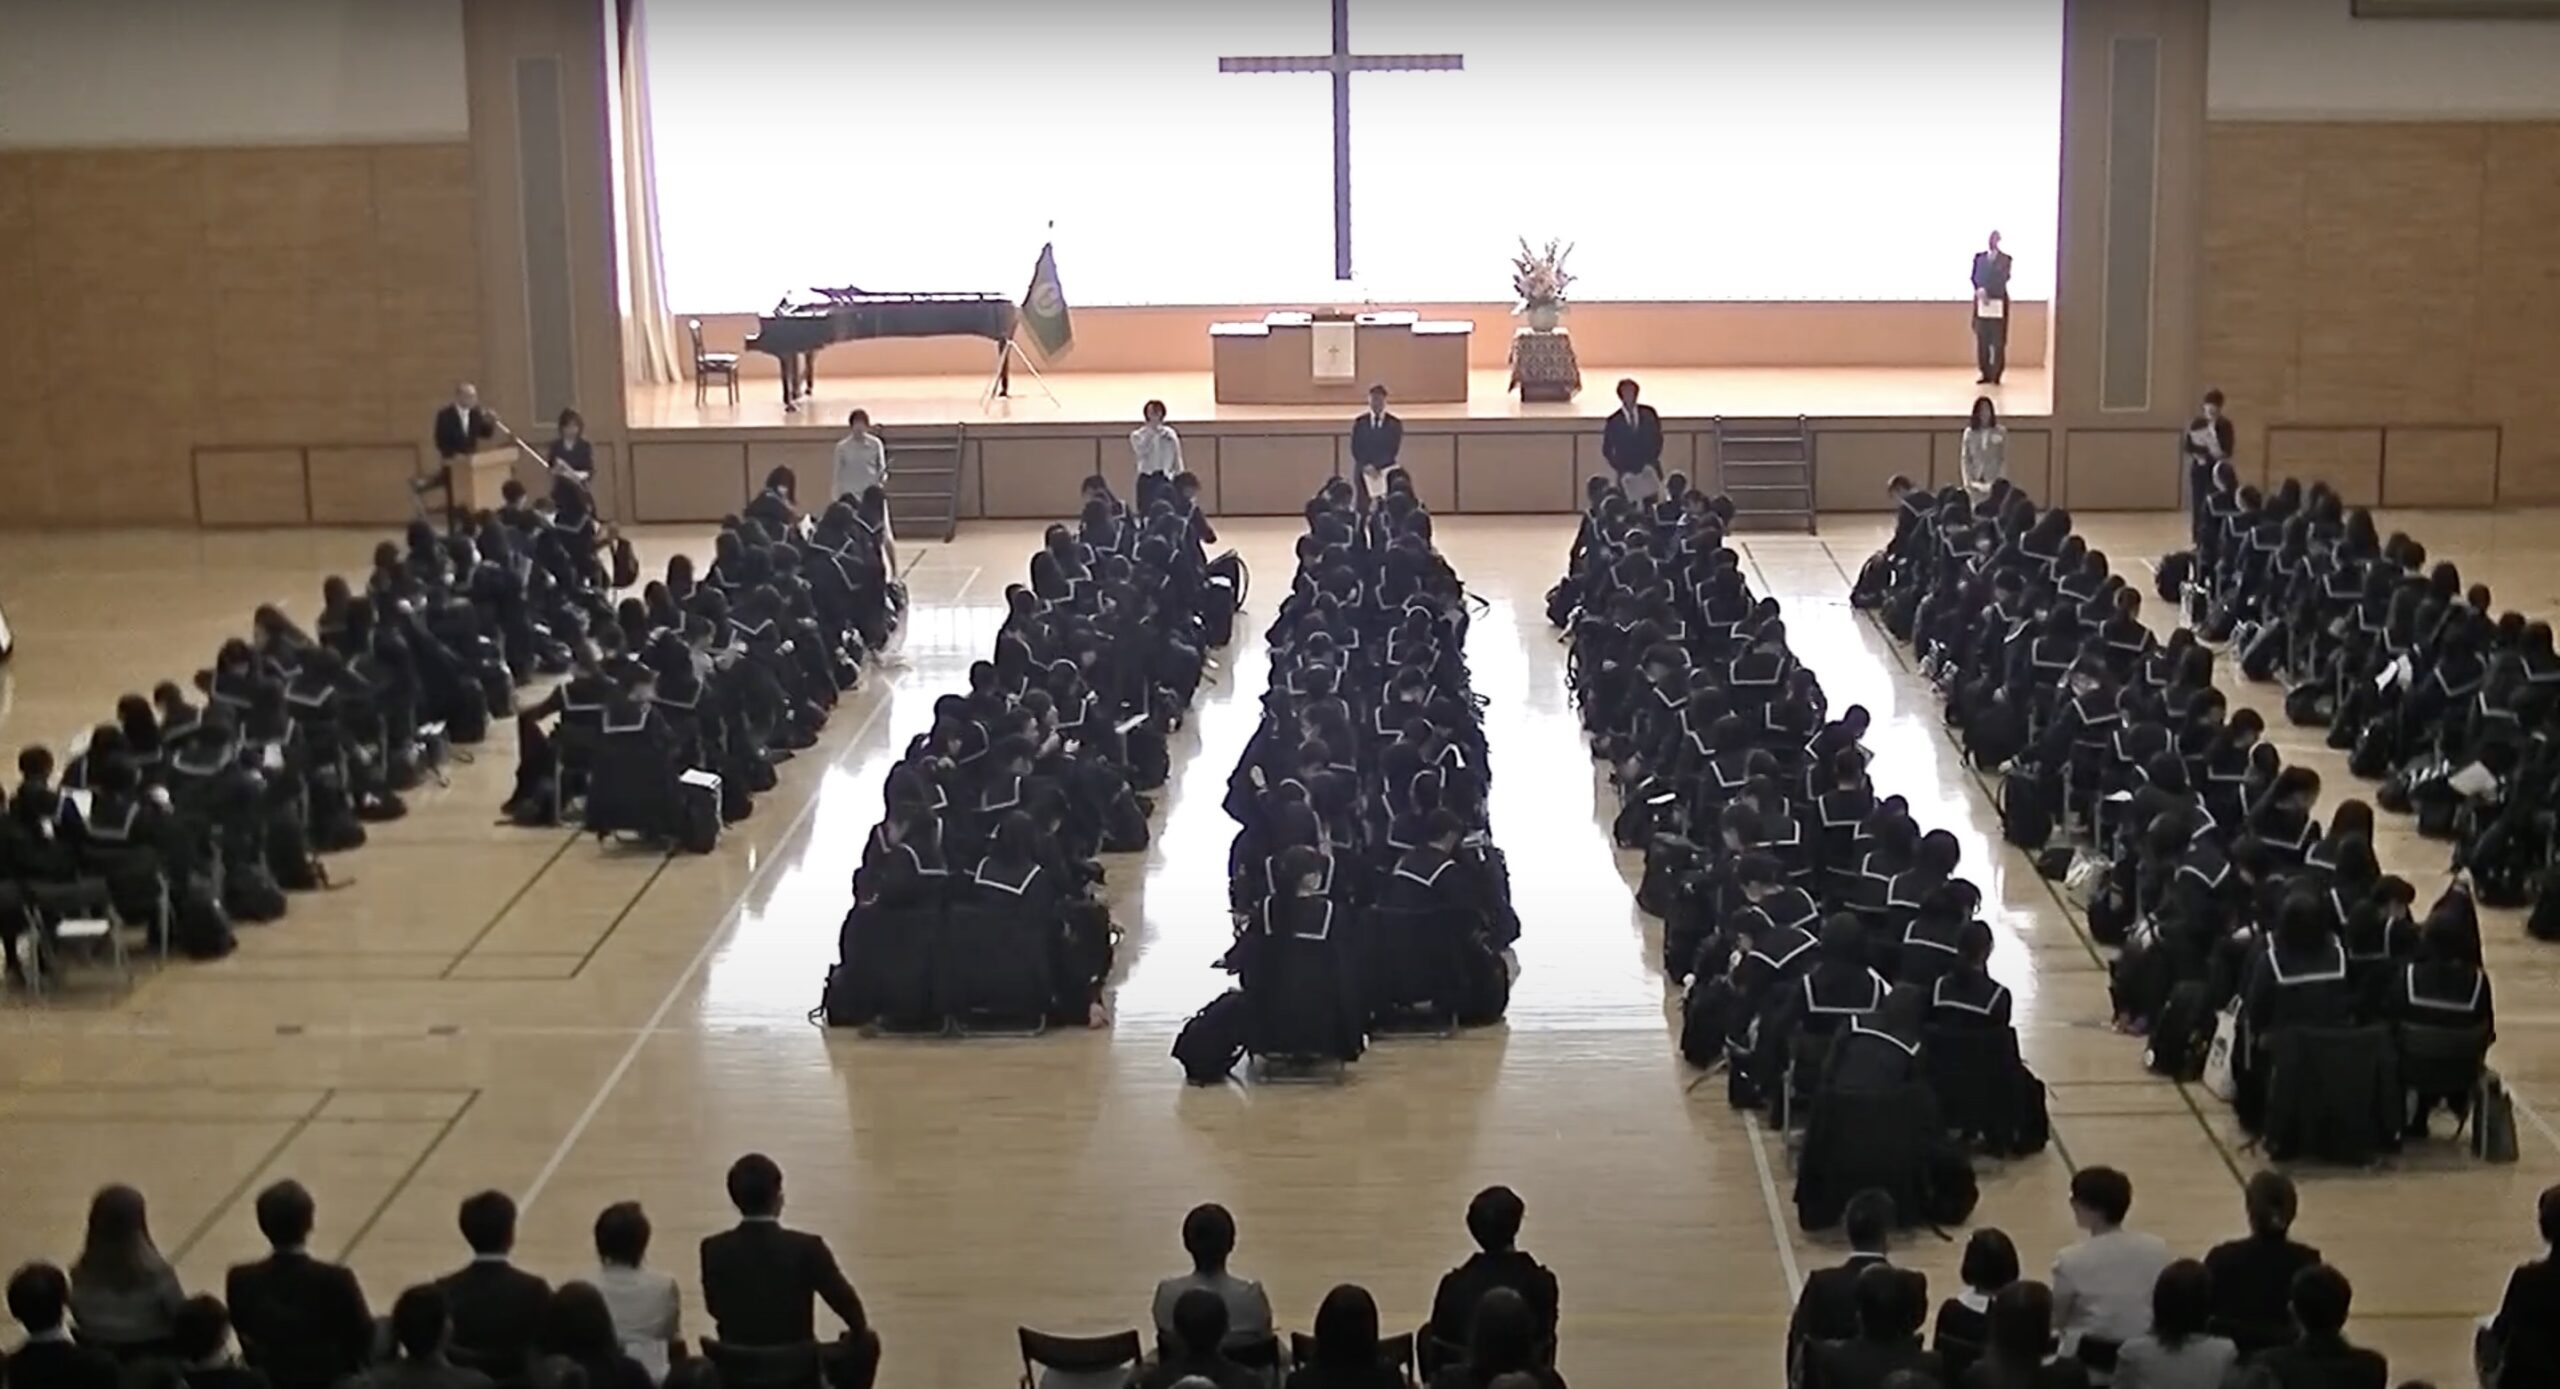 4月6日(土)遺愛女子中学・高等学校の『入学礼拝式』が挙行されました。